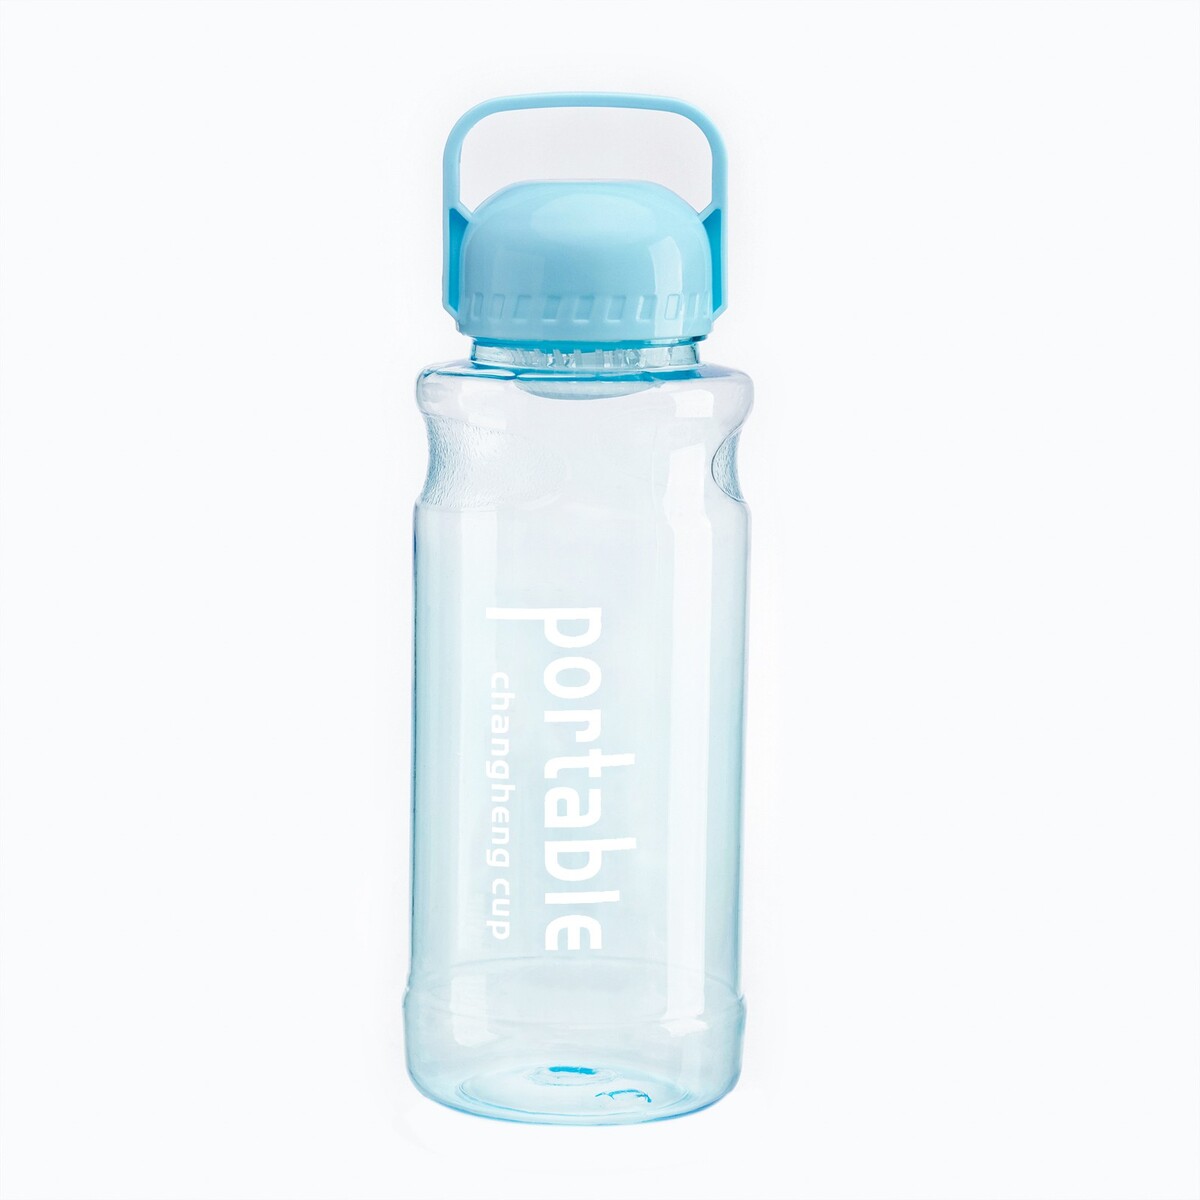 Бутылка для воды, 1.3 л, portable 30pcs transparent glass spray bottles 5ml refillable bottle for essential oil perfume storage vials portable travel sample jars